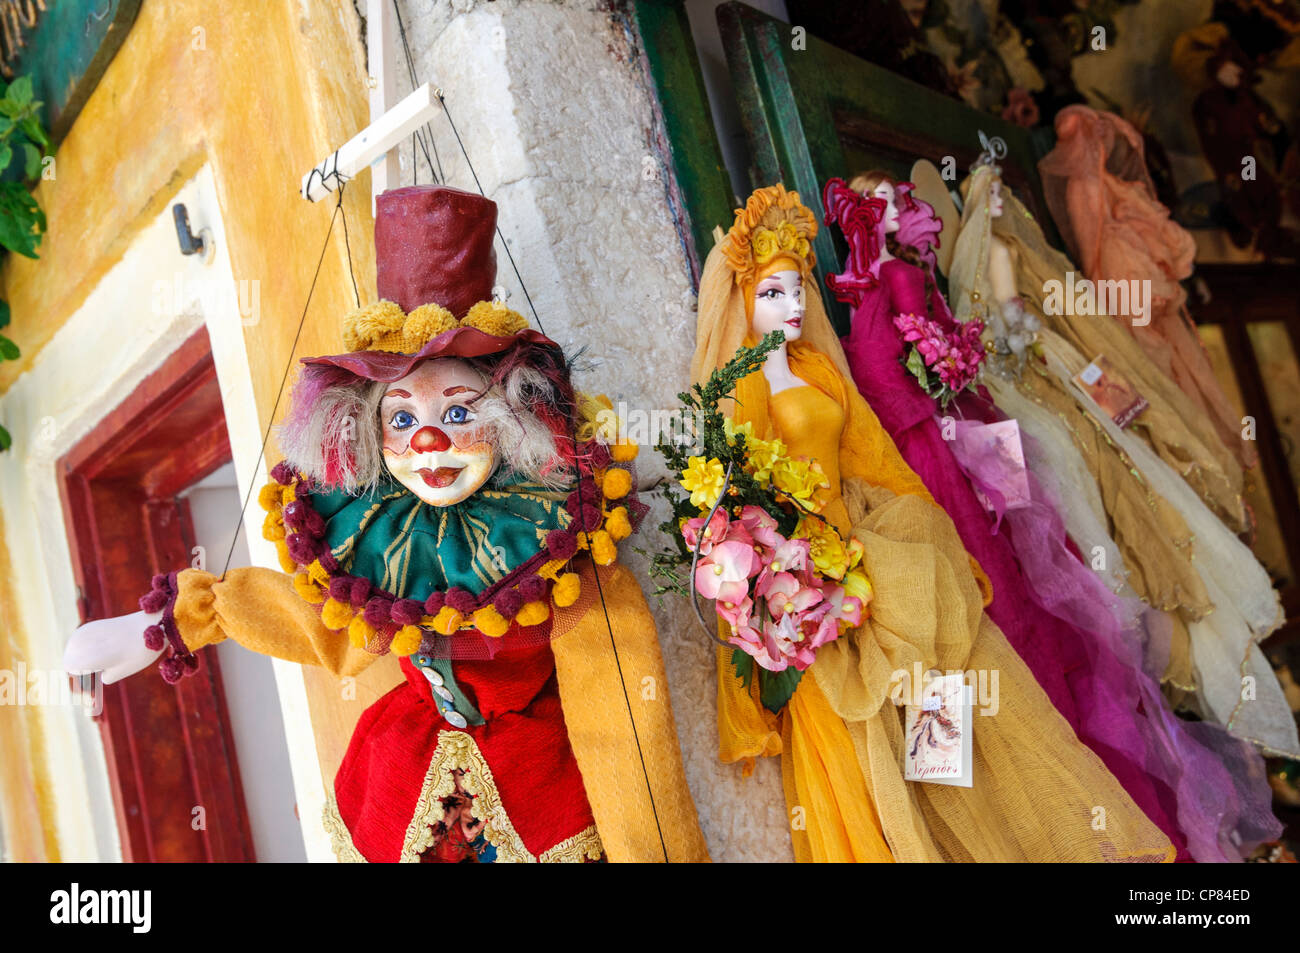 Bunten Puppen auf dem Display vor einem Geschäft in Griechenland Stockfoto